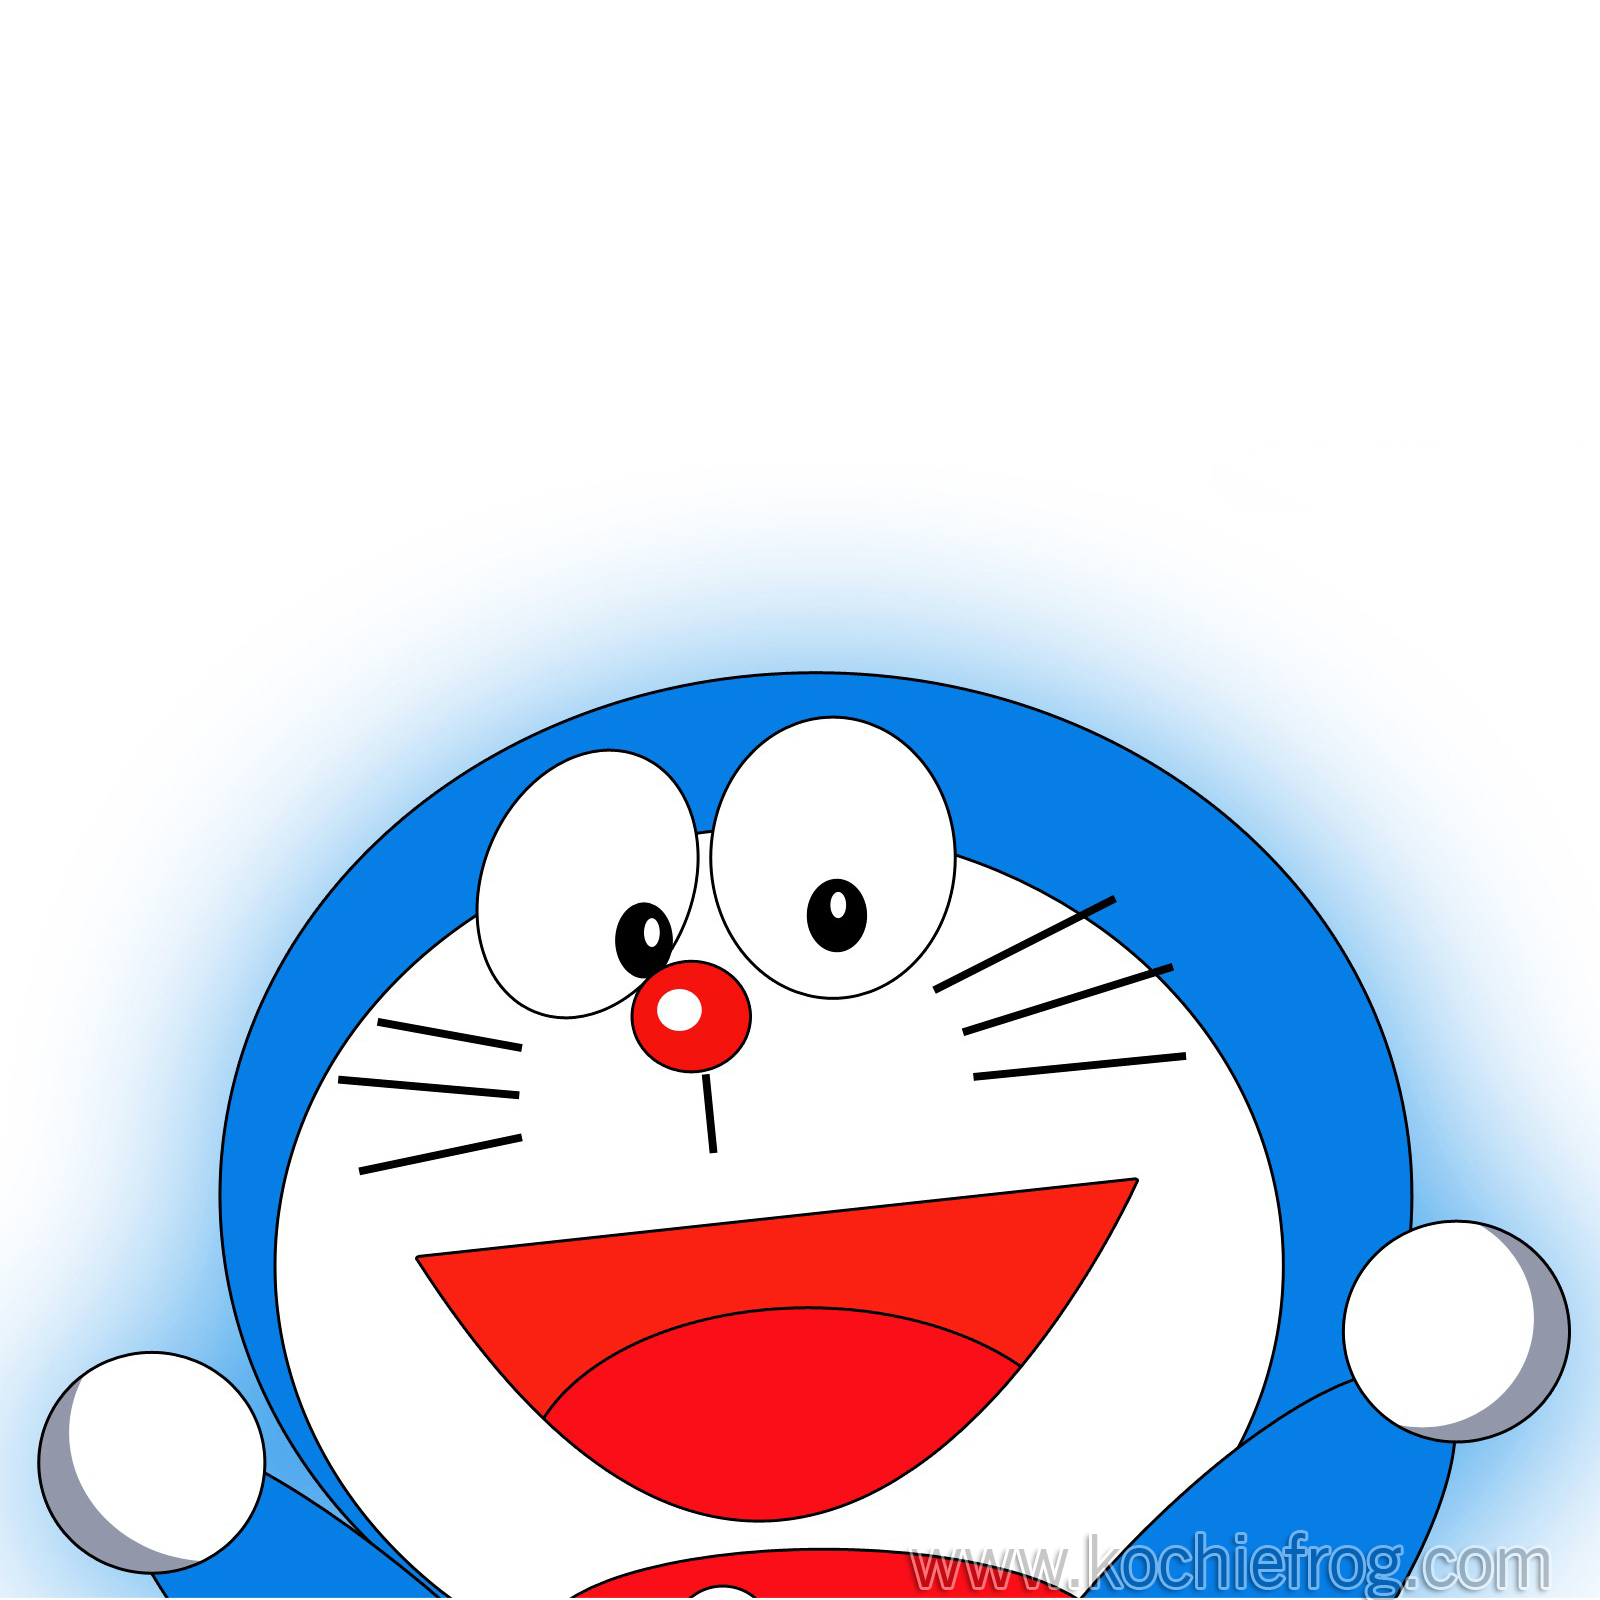 Gambar Animasi Doraemon Untuk Dp Bbm Terlengkap Display Picture Update